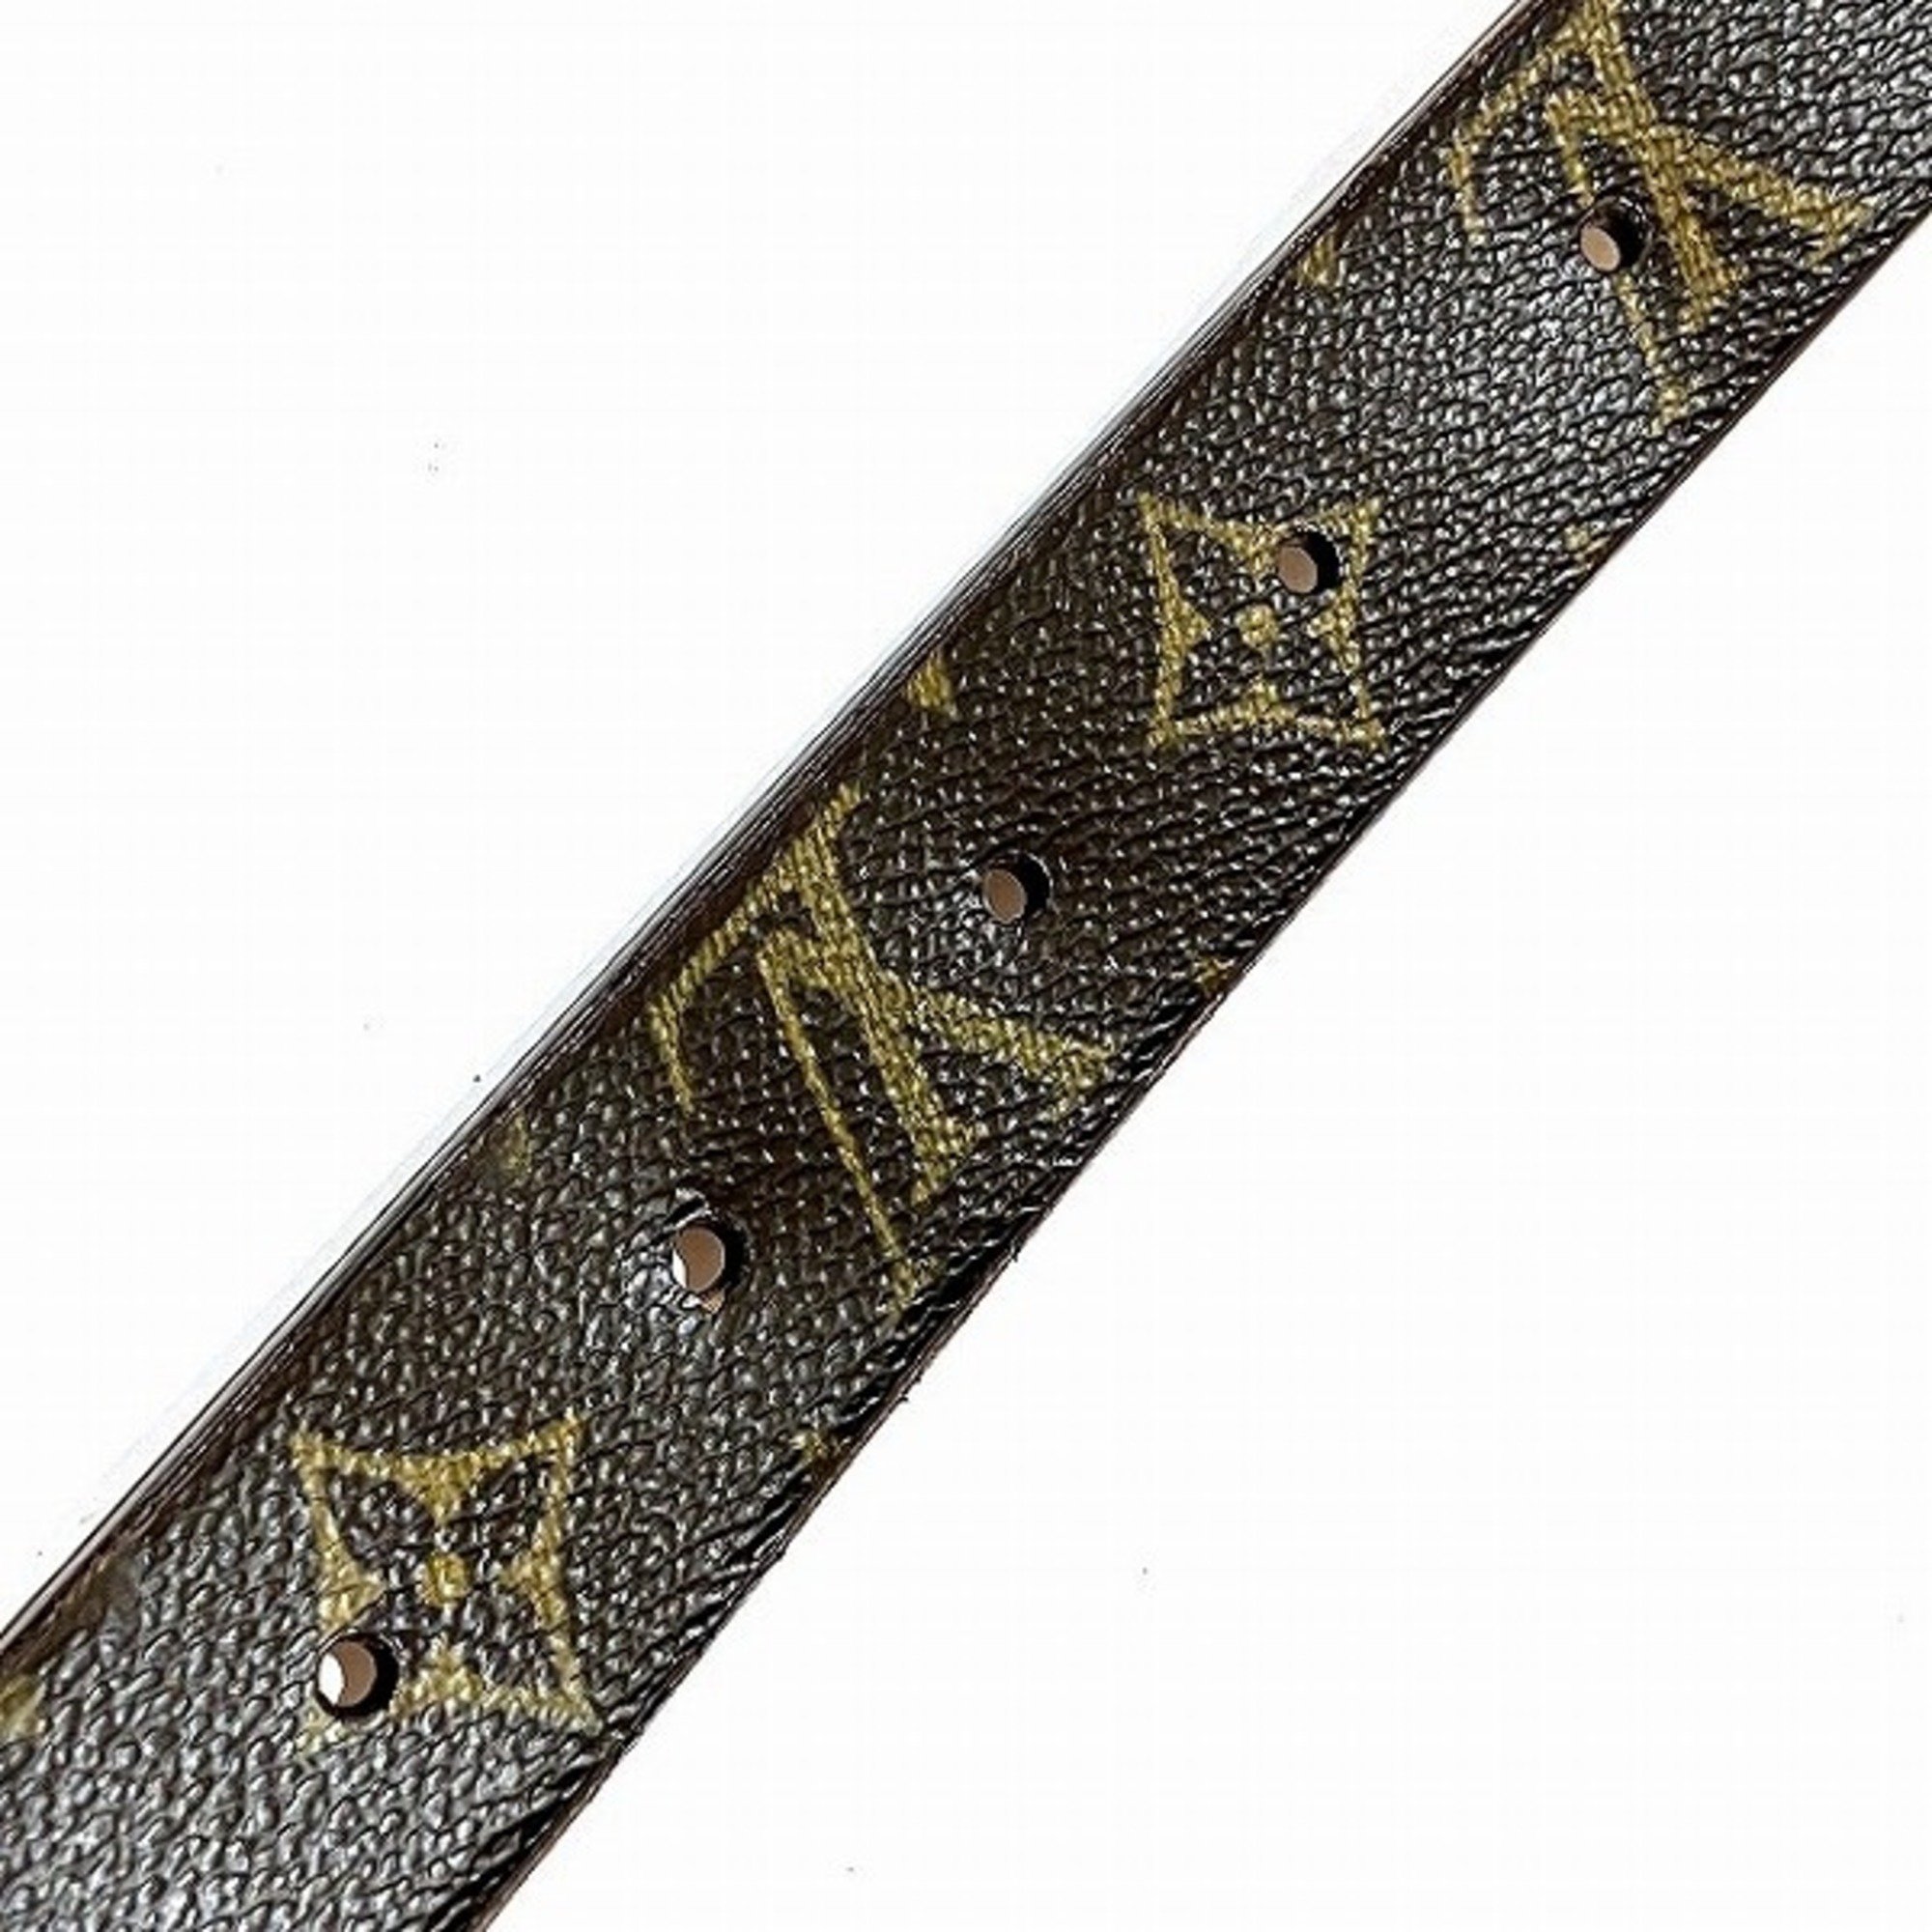 Louis Vuitton Monogram Santulle Carre M6801 Brand Accessories Belt Women's